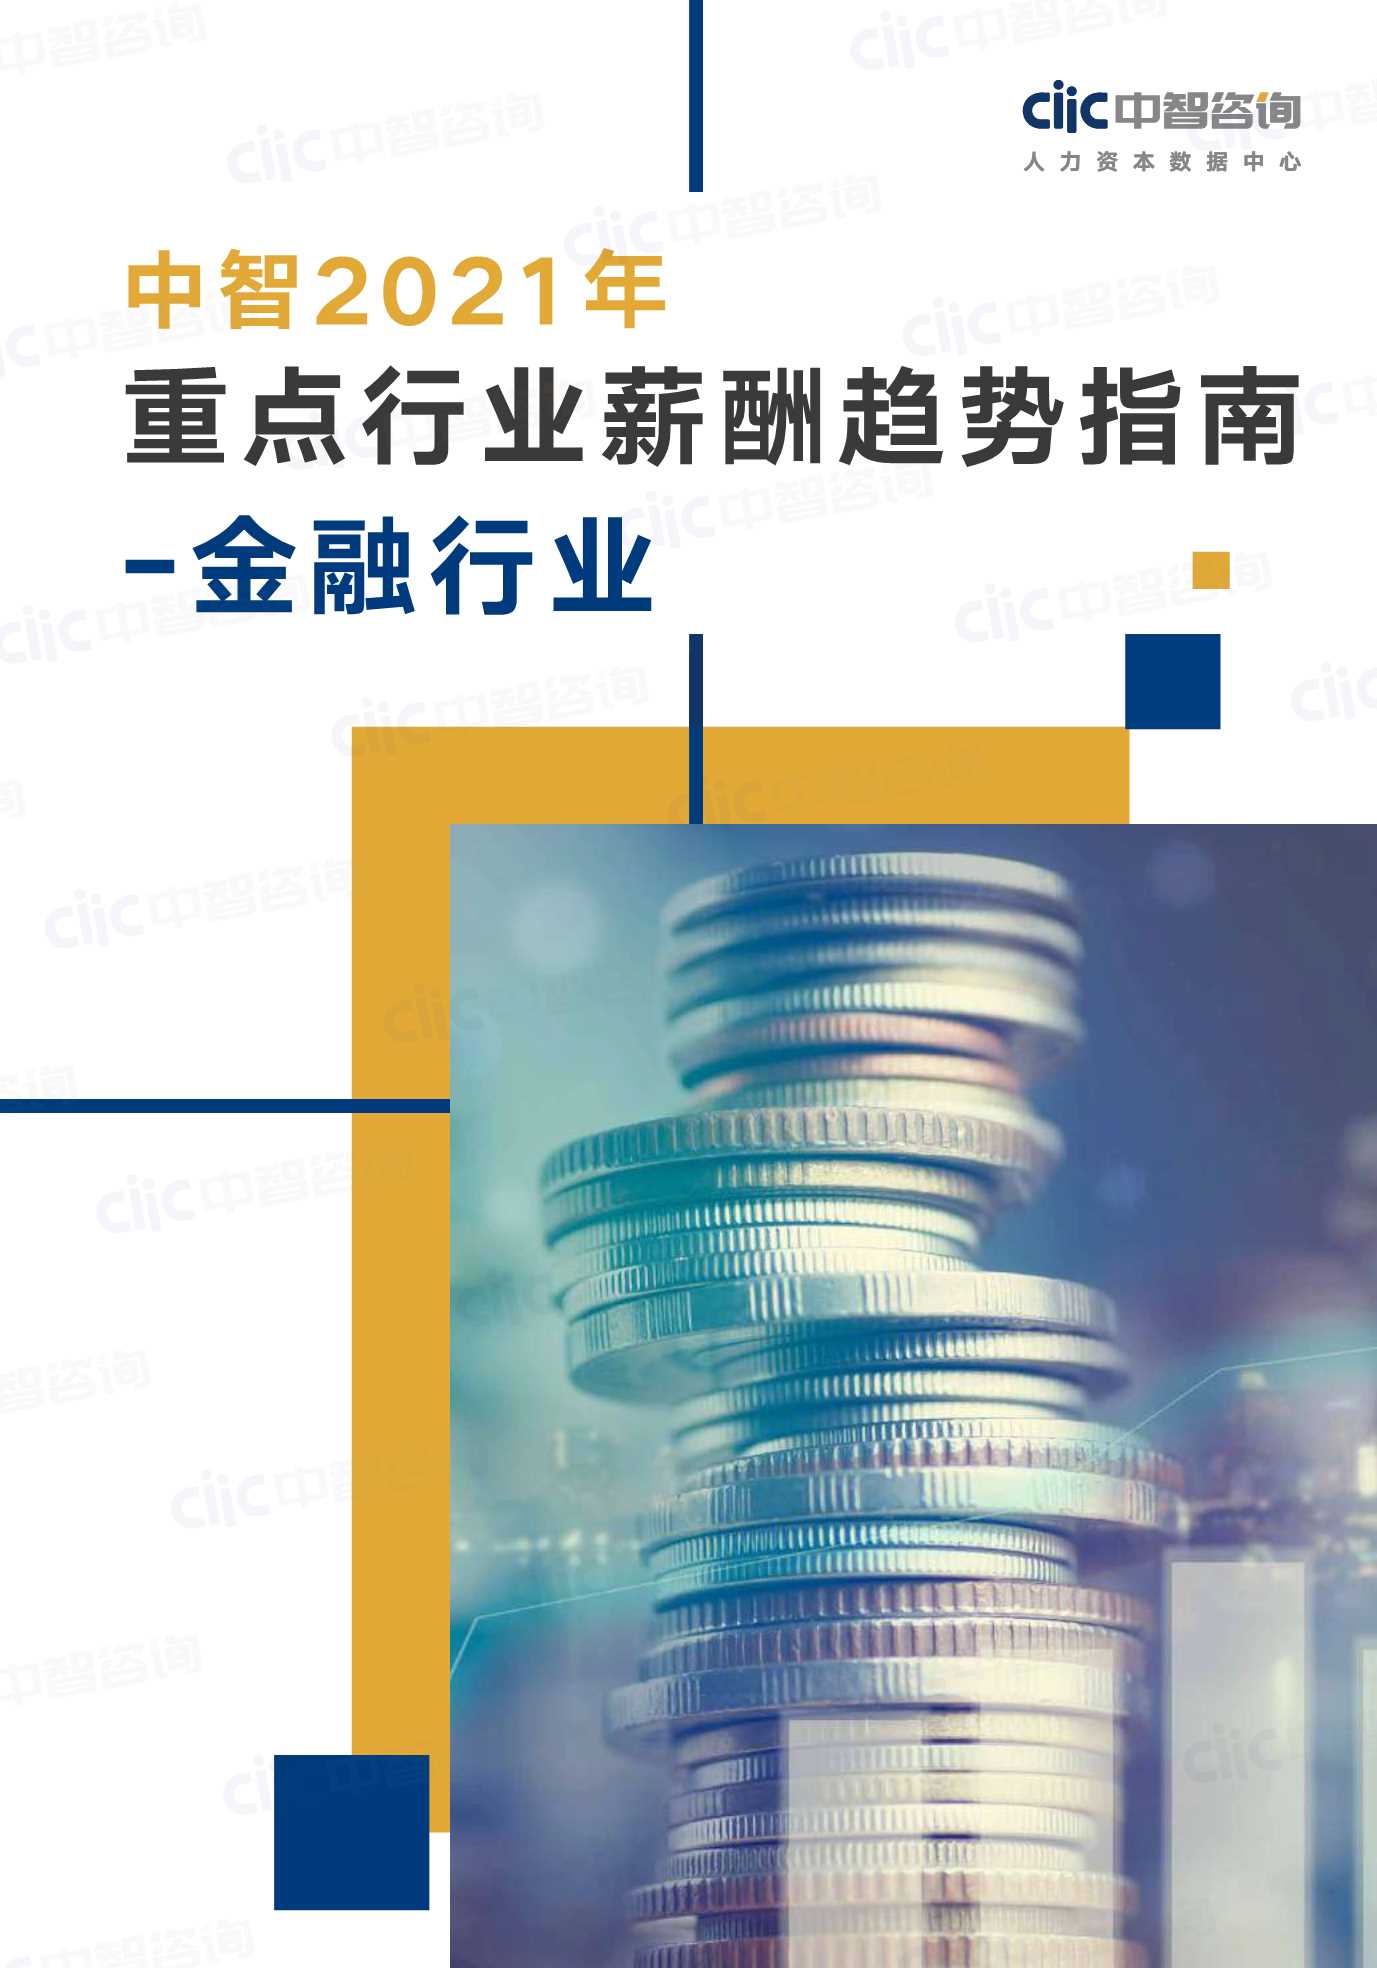 中智咨询-2021年重点行业趋势指南金融行业-2021.05-27页